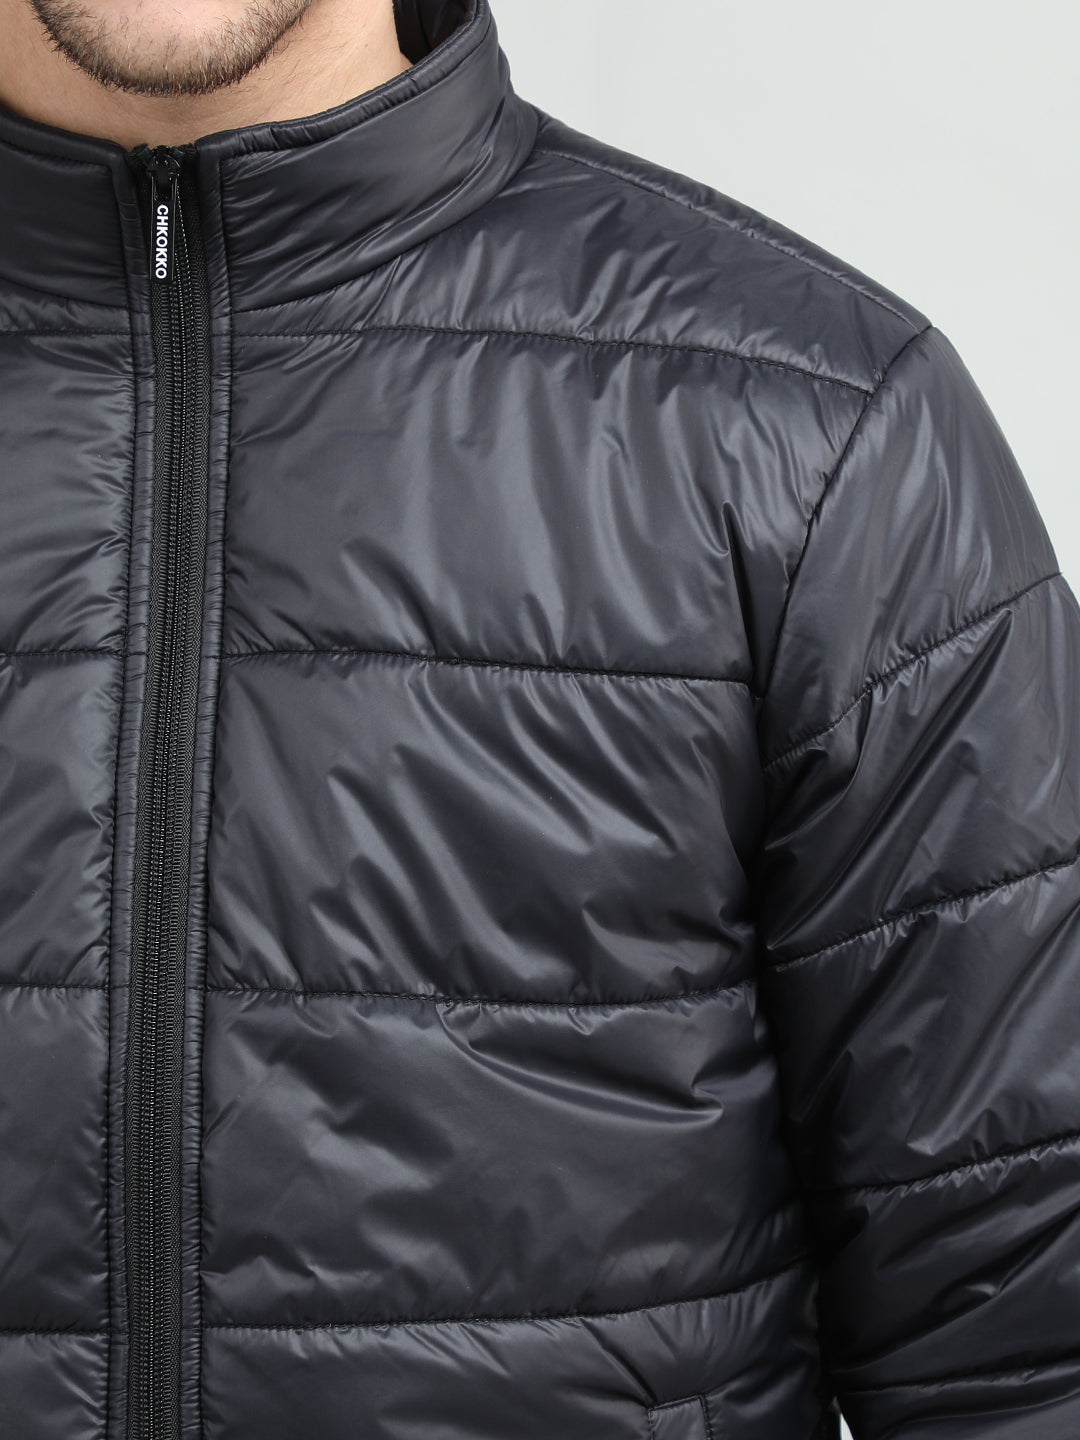 Men's winter wear Jackets | CHKOKKO